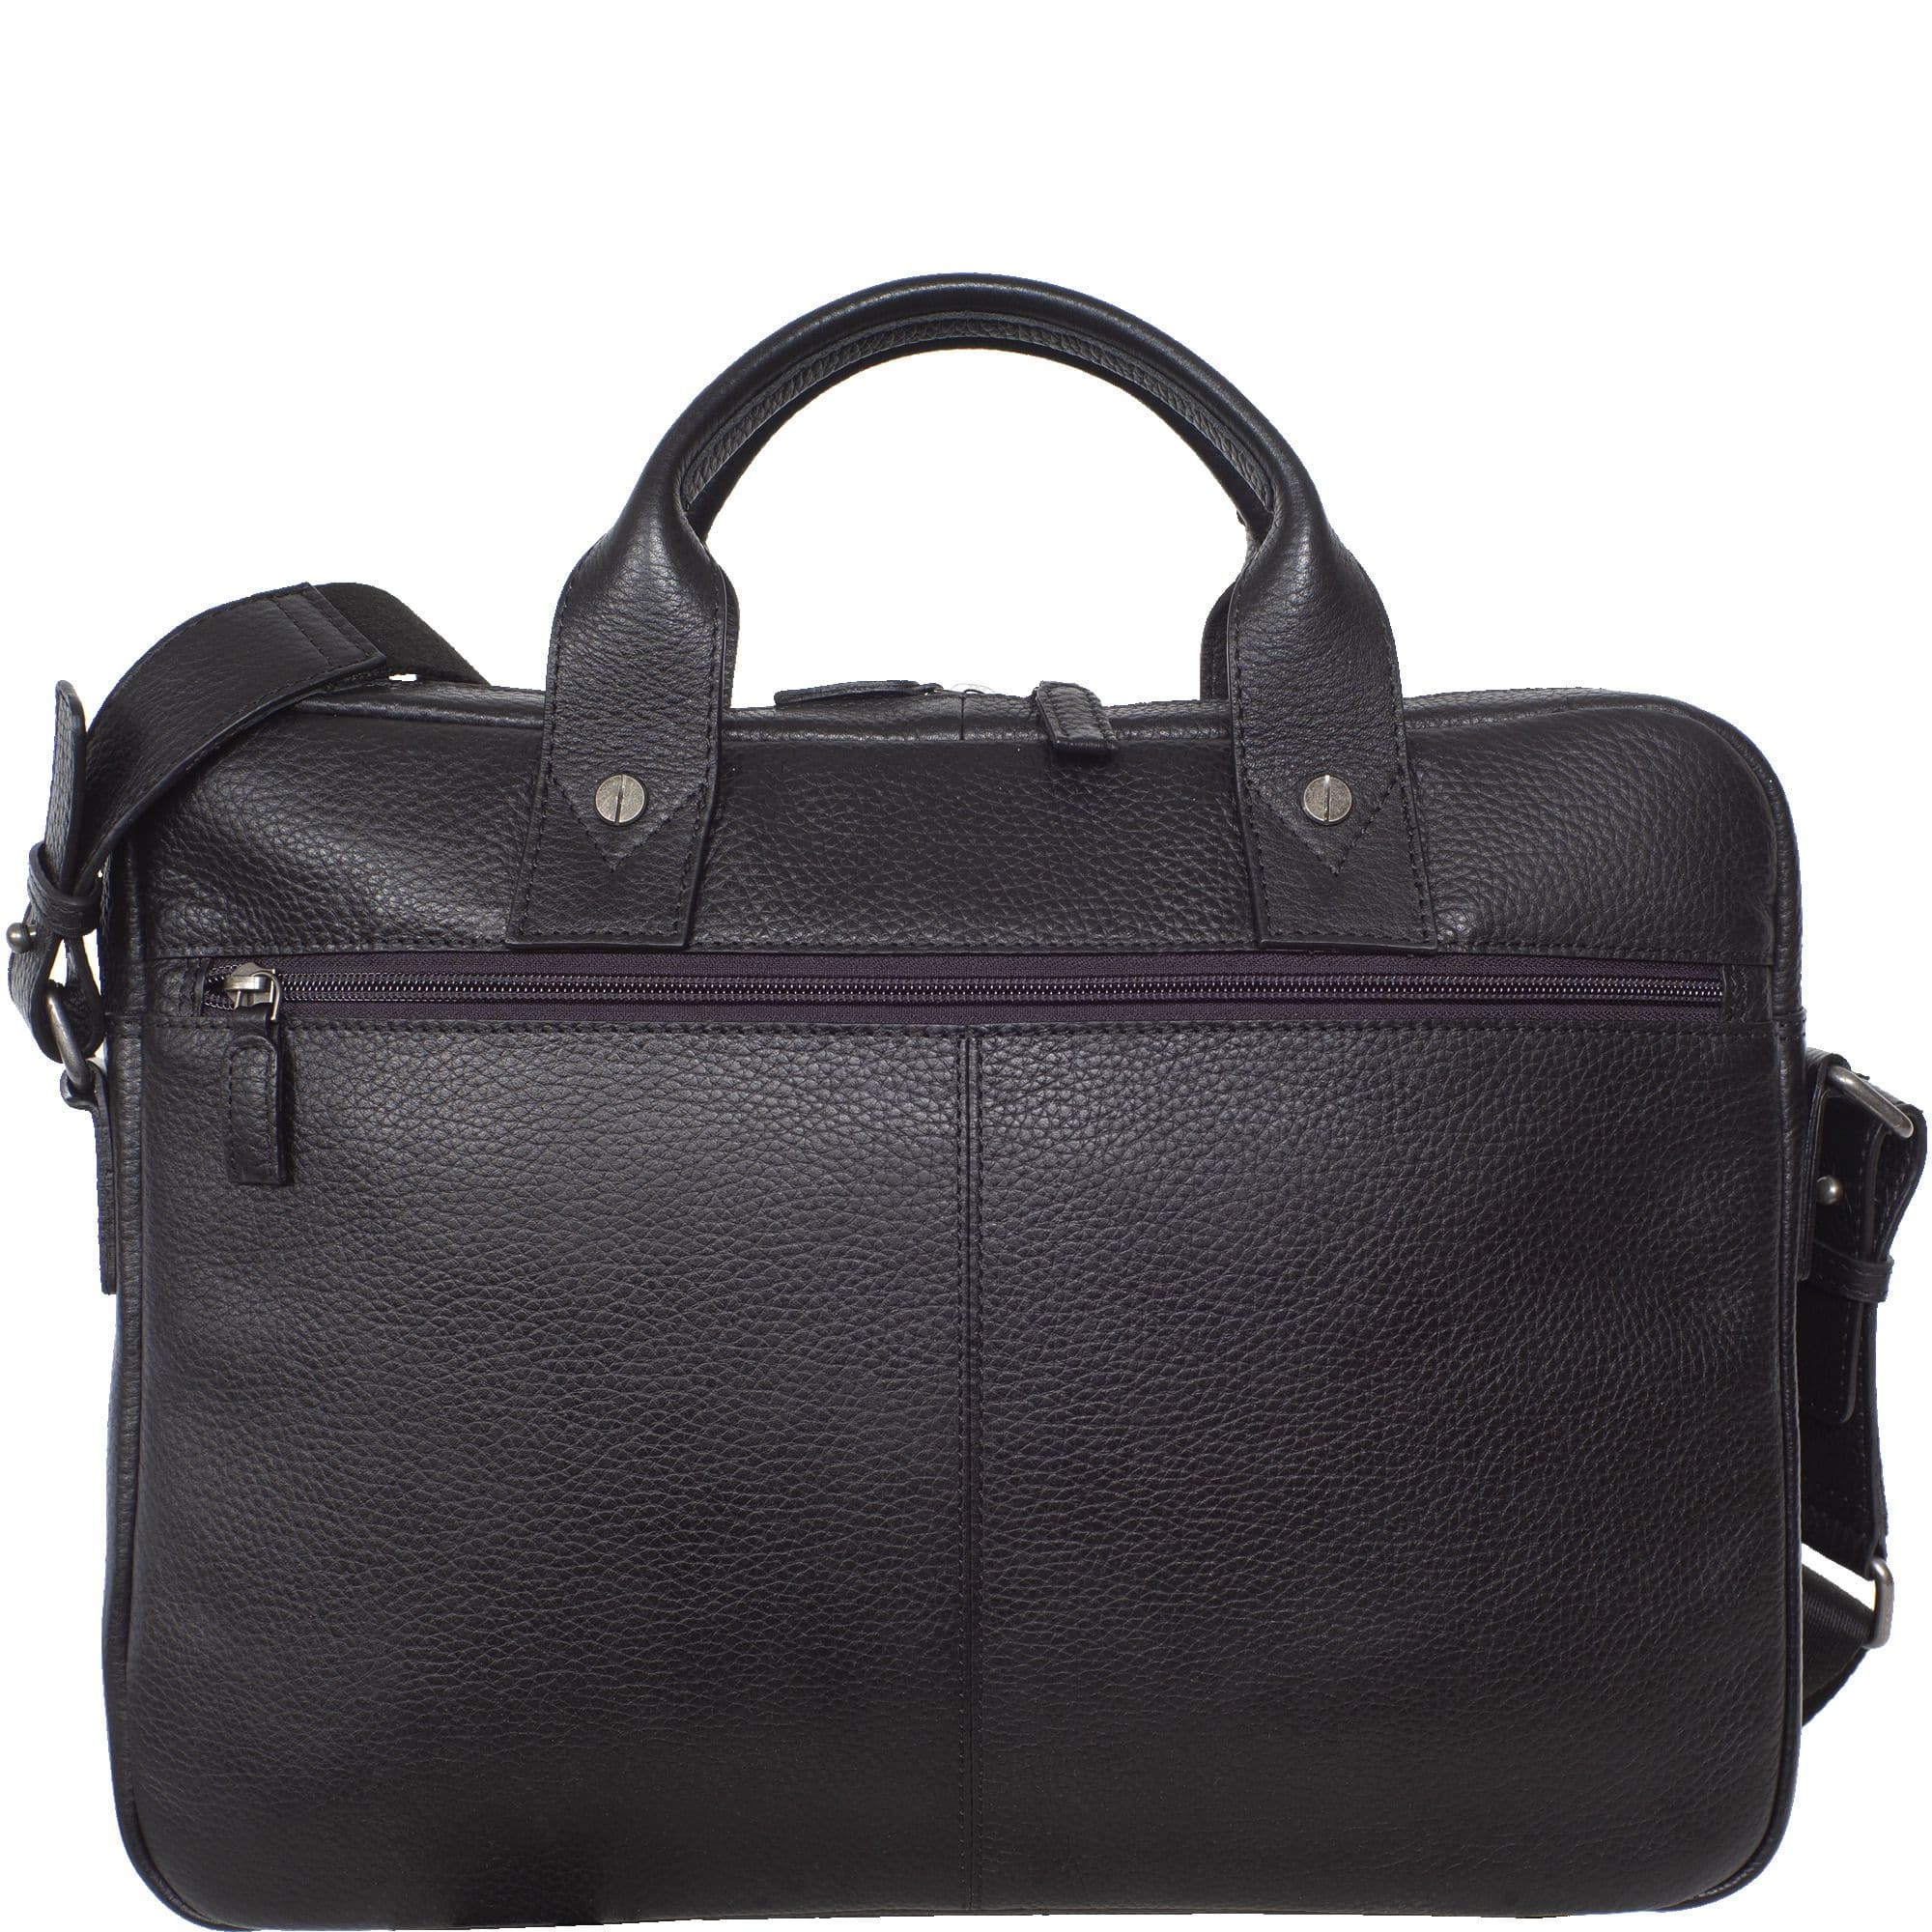 Businesstasche Laptoptasche 15 Zoll geprägtes Leder schwarz Vortasche mit Boden